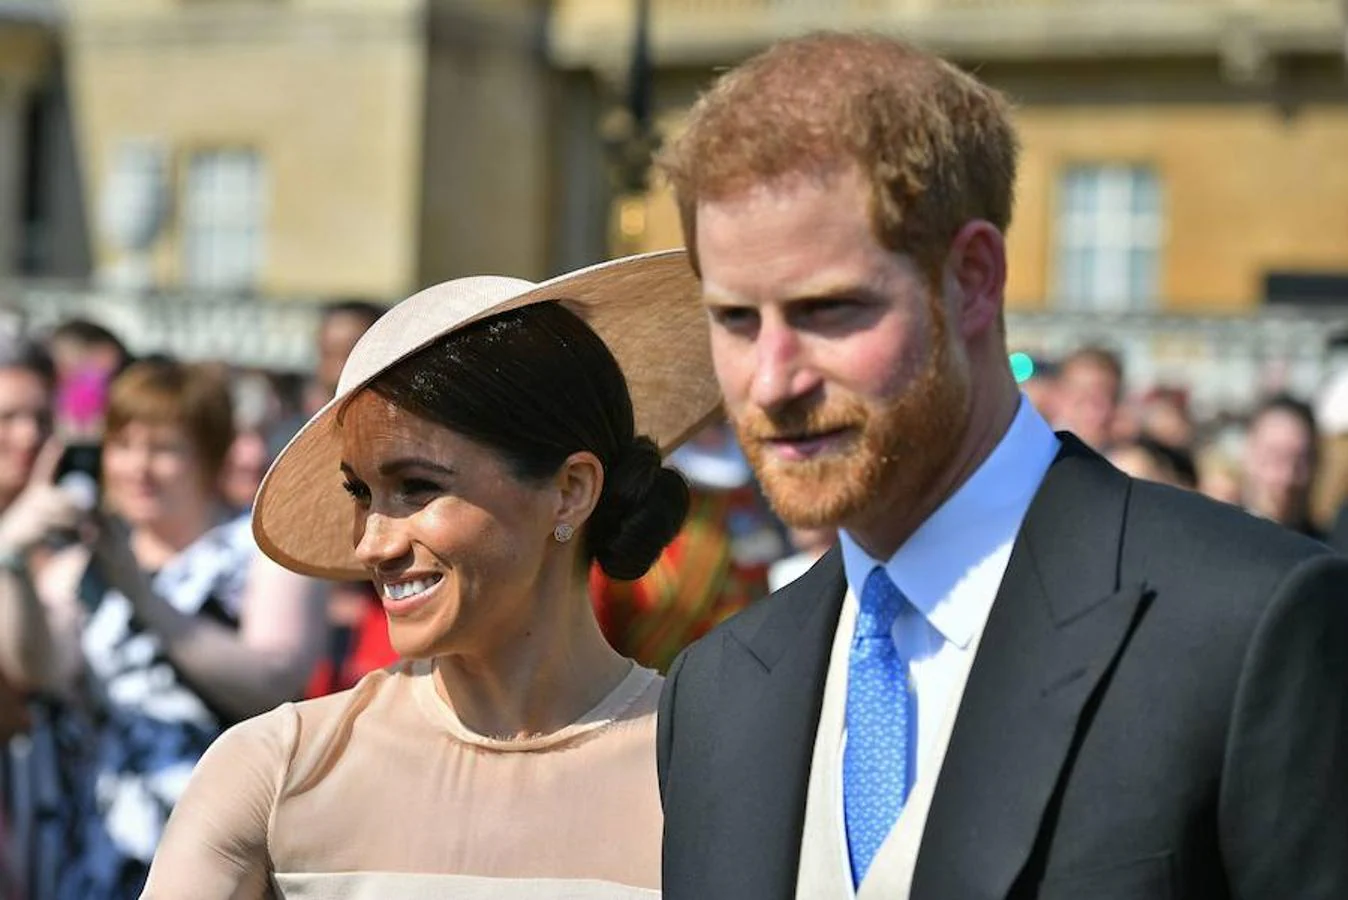 Los duques de Sussex han acudido hoy a su primer acto como marido y mujer, tras contraer matrimonio el pasado 19 de mayo en la capilla de San Jorge, en el castillo de Windsor.